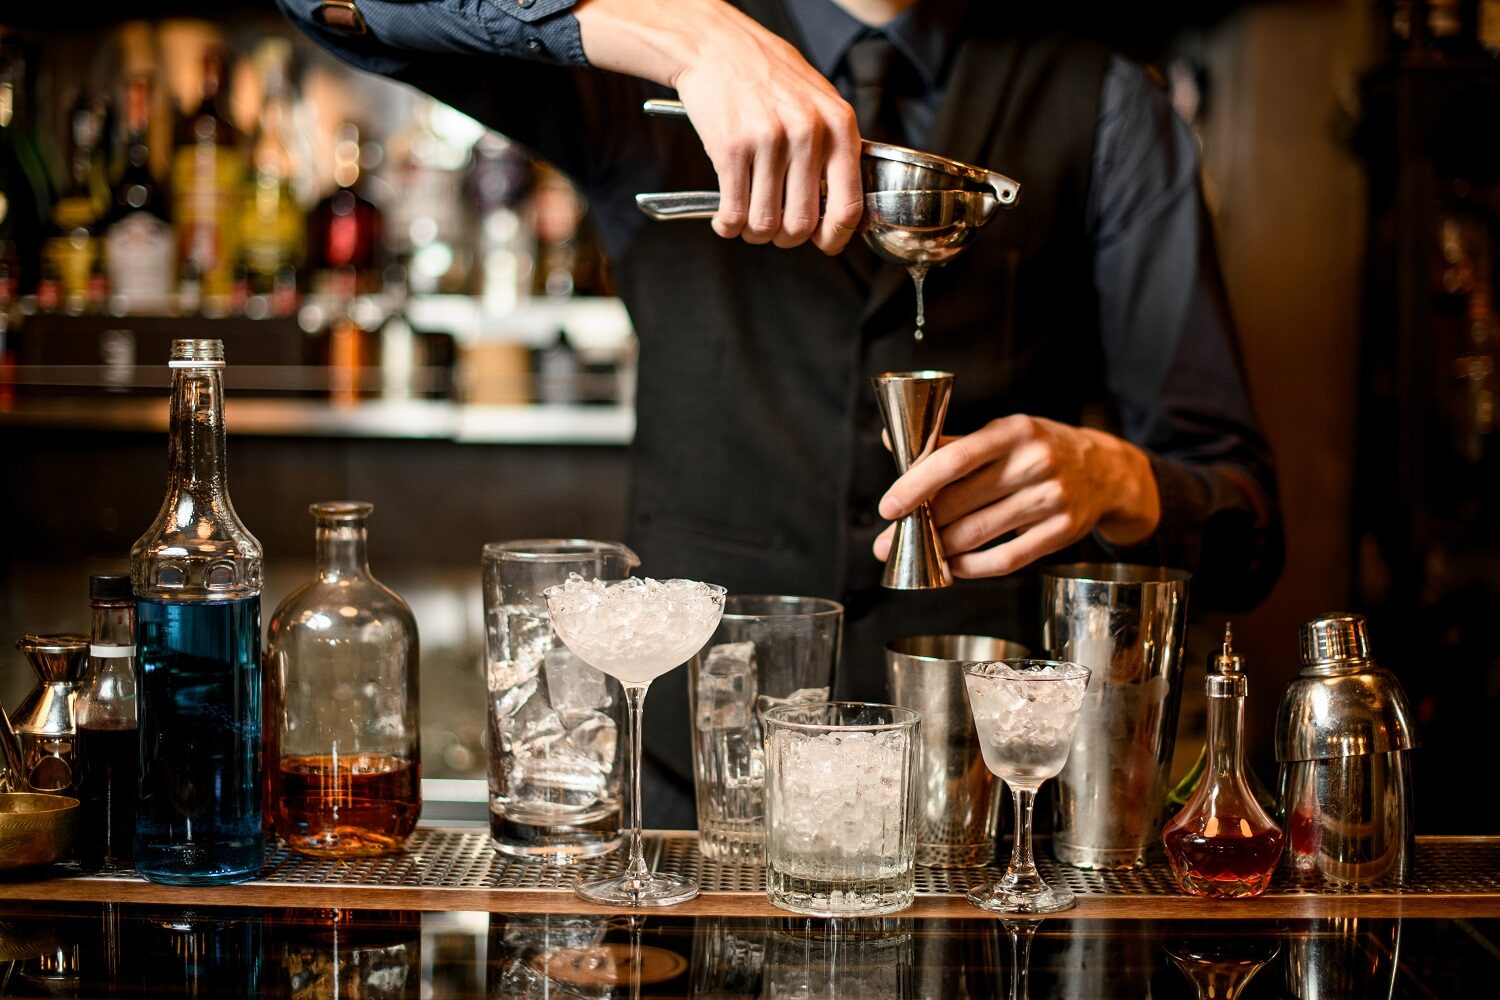 barman care stoarce o lămâie intr-un pahar, iar langa el, pe bar, sunt insirate mai multe pahare goale - imagine reprezentativă pentru cocktailuri faimoase